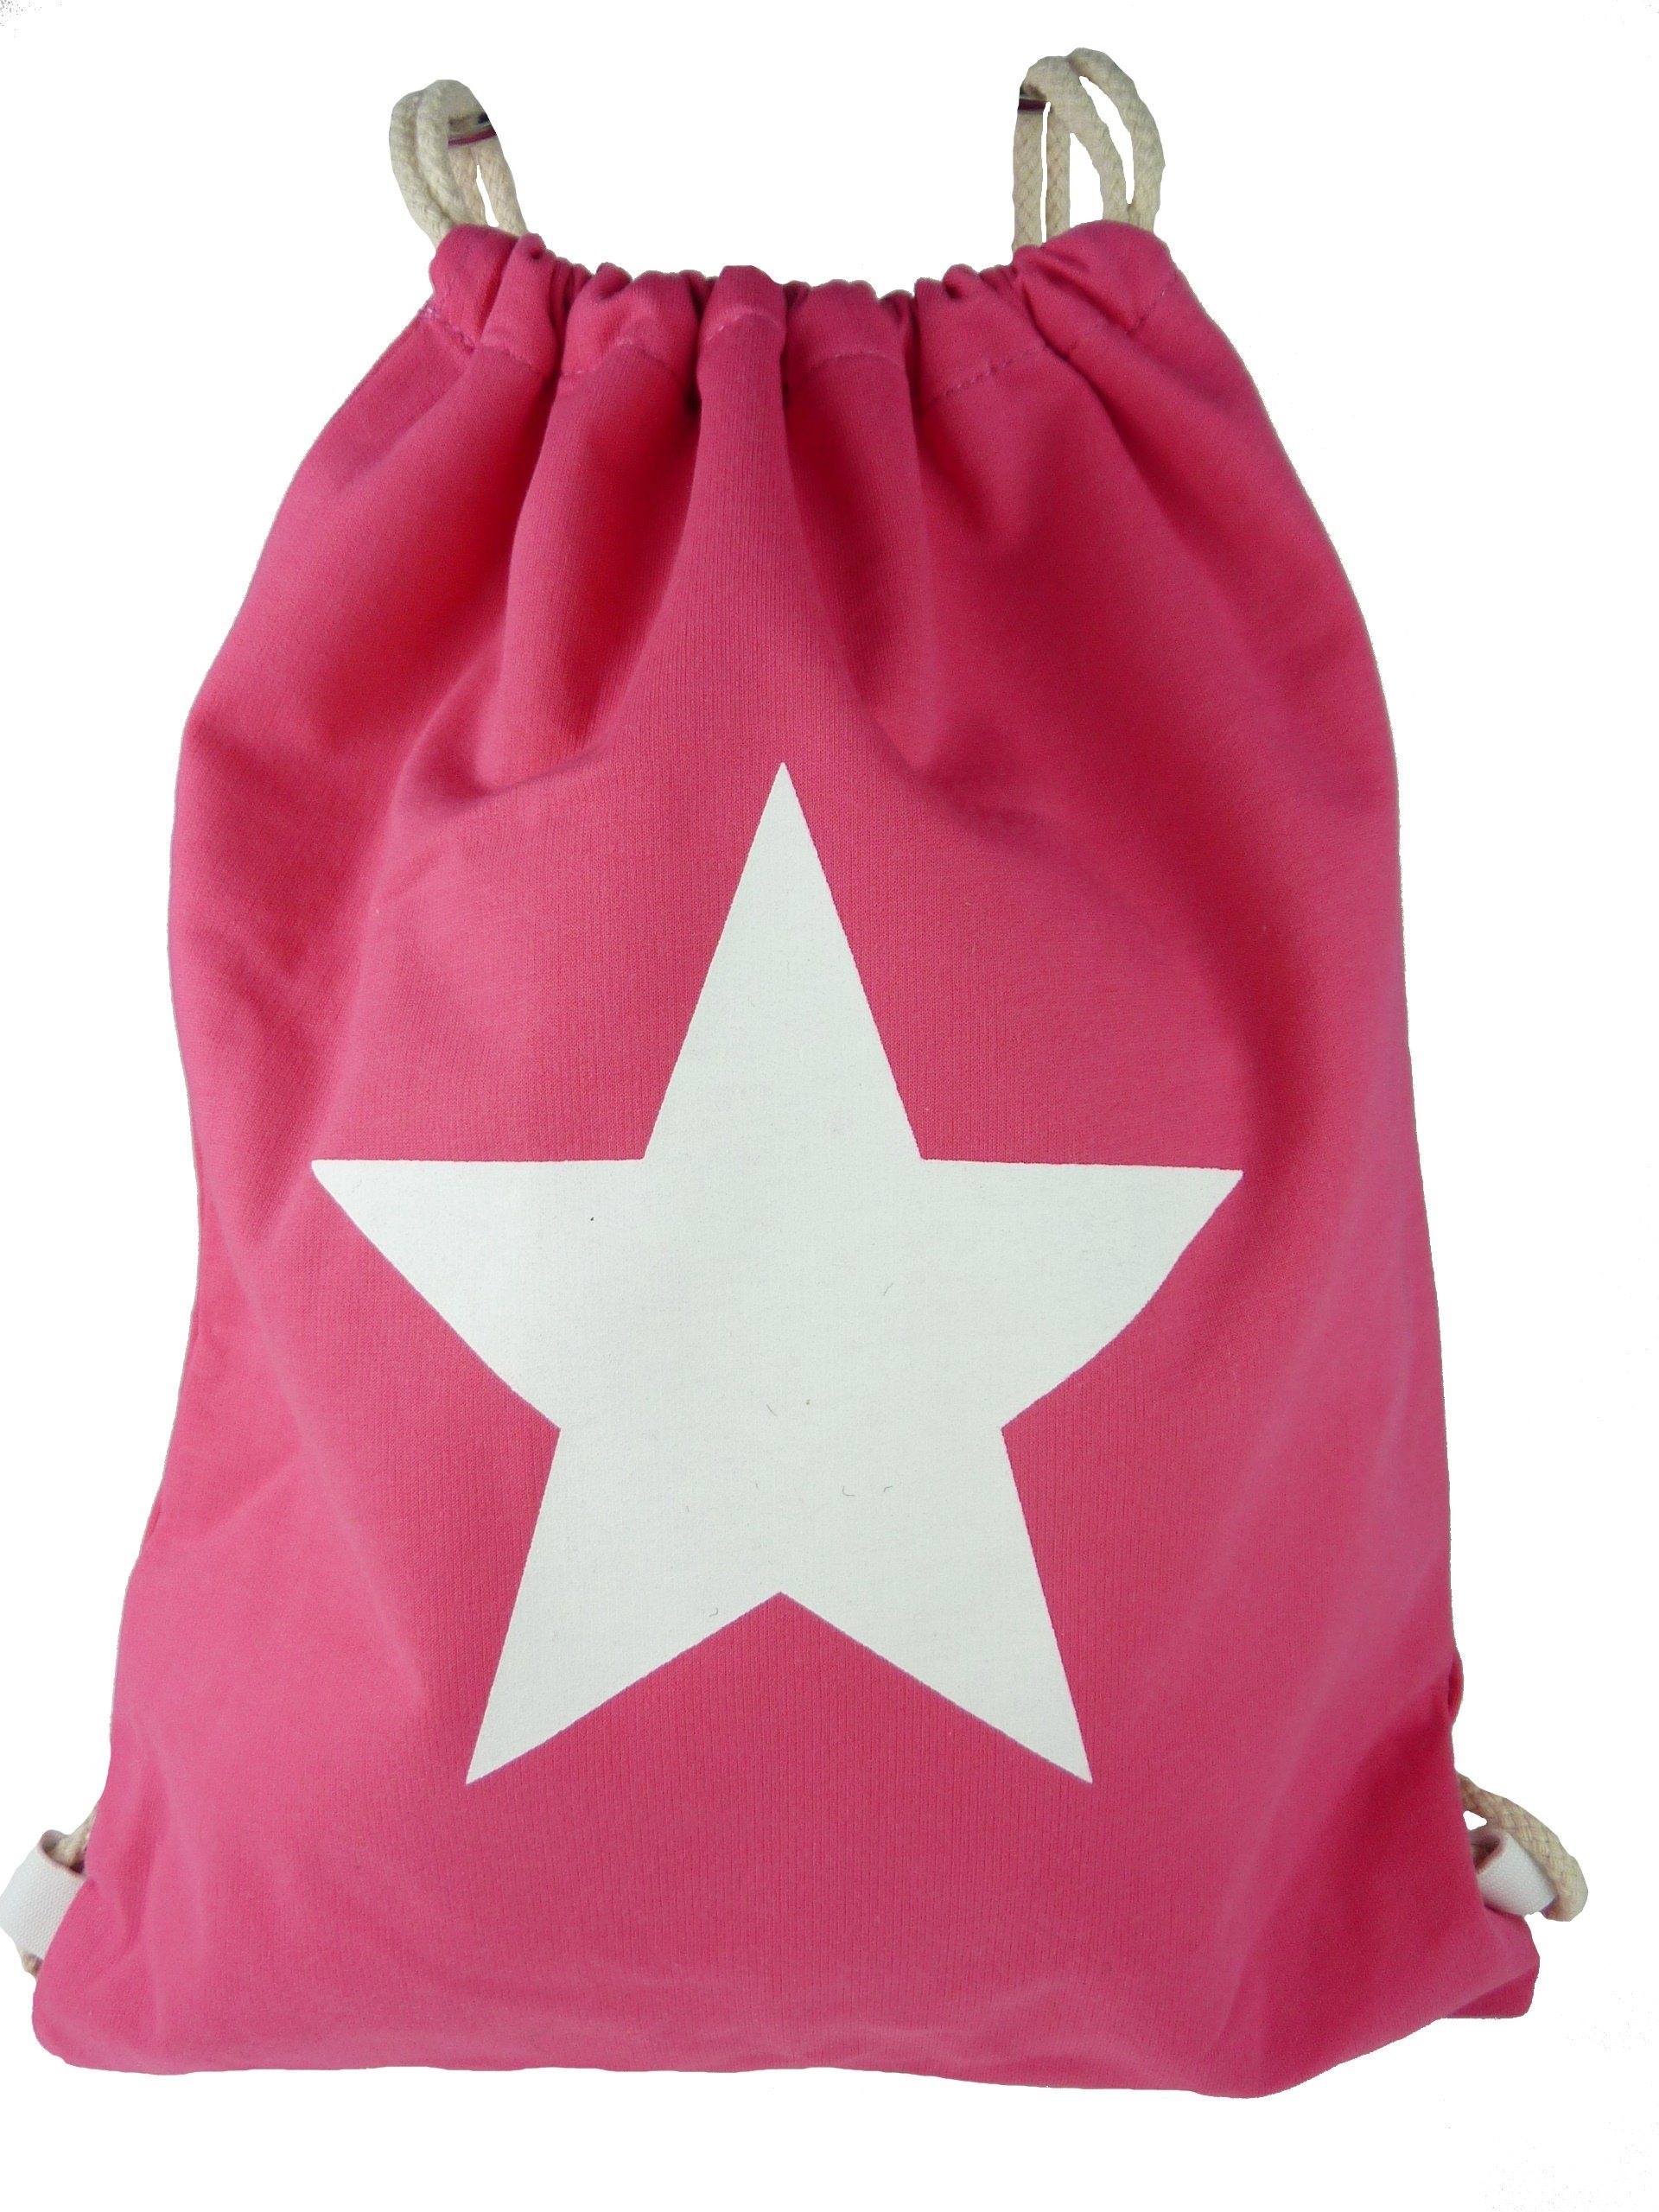 Taschen4life Gymbag Turnbeutel großem Jute pink sling Stern, Rucksack Beutel, Sportbeutel mit bag, 1605